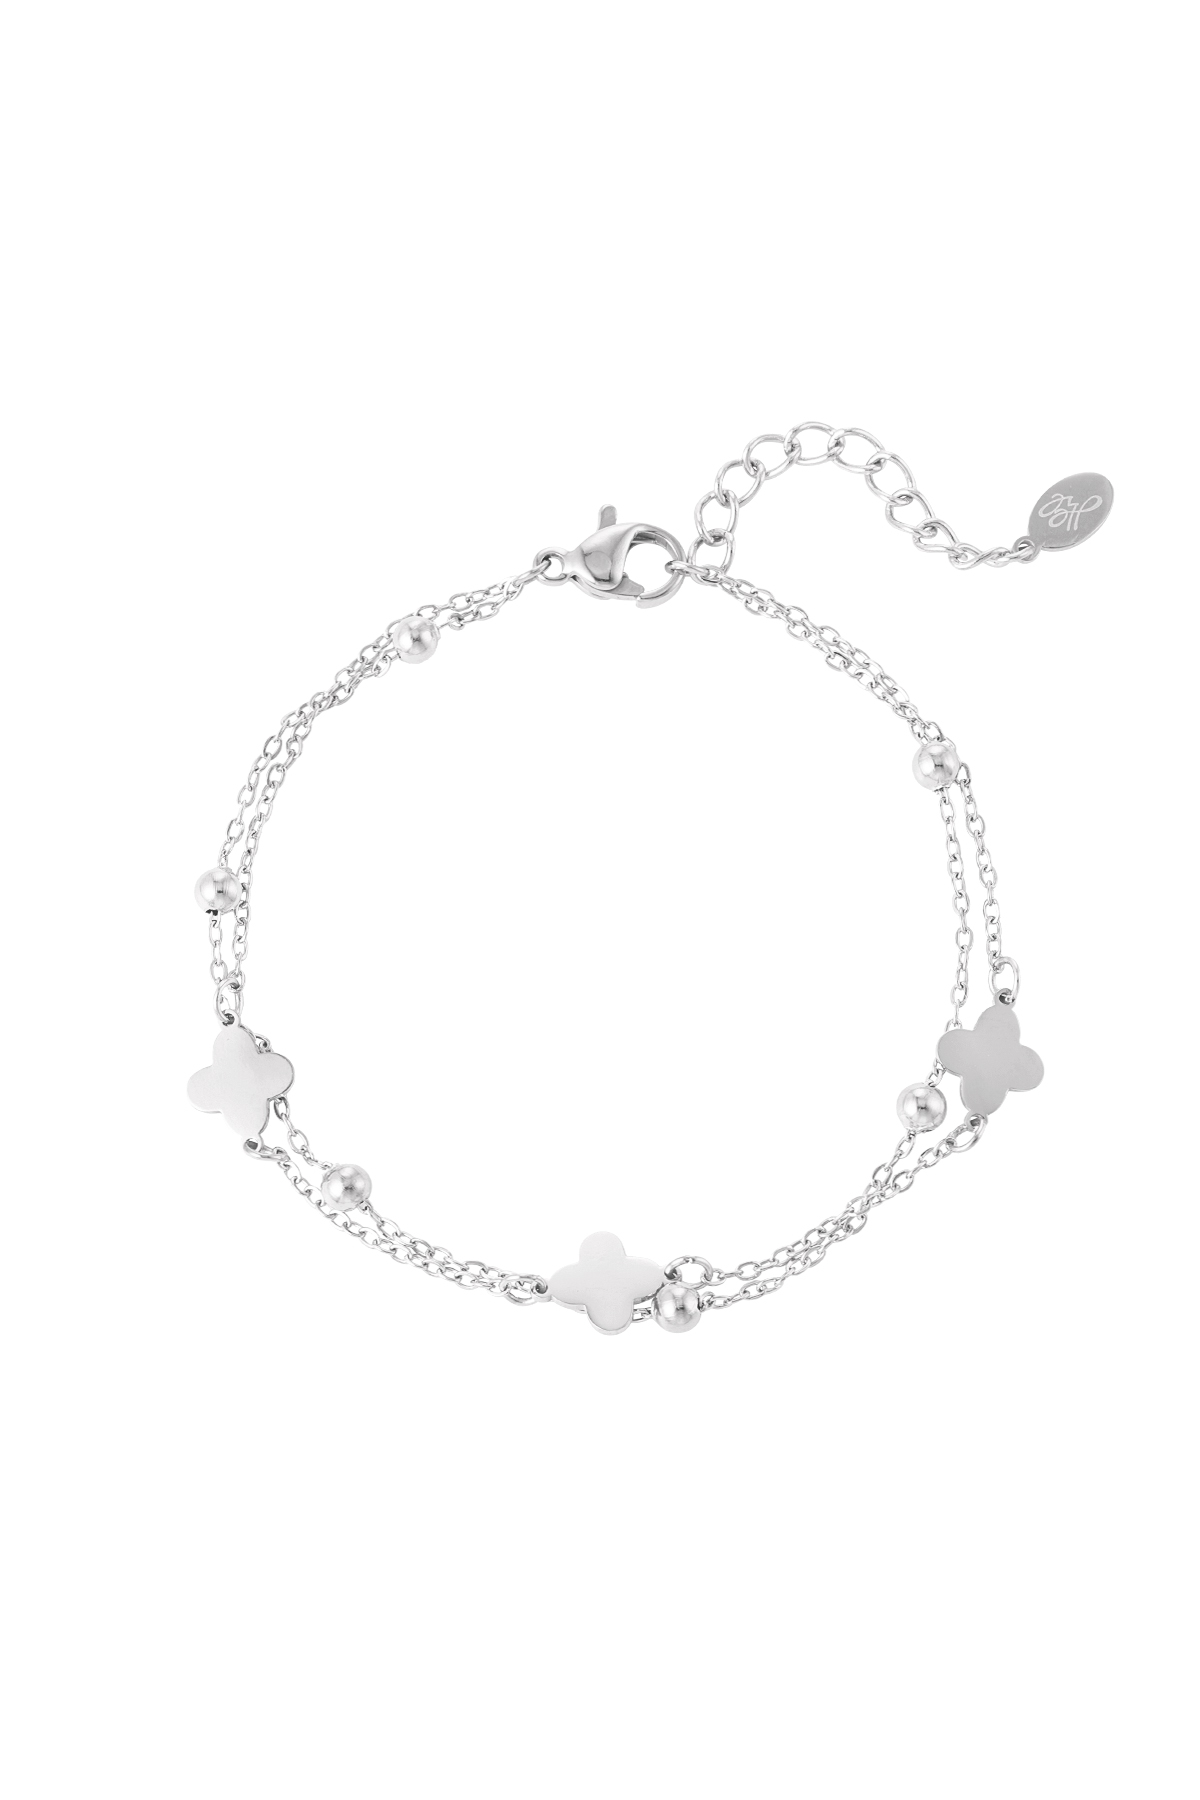 Double bracelet clover/balls - silver h5 